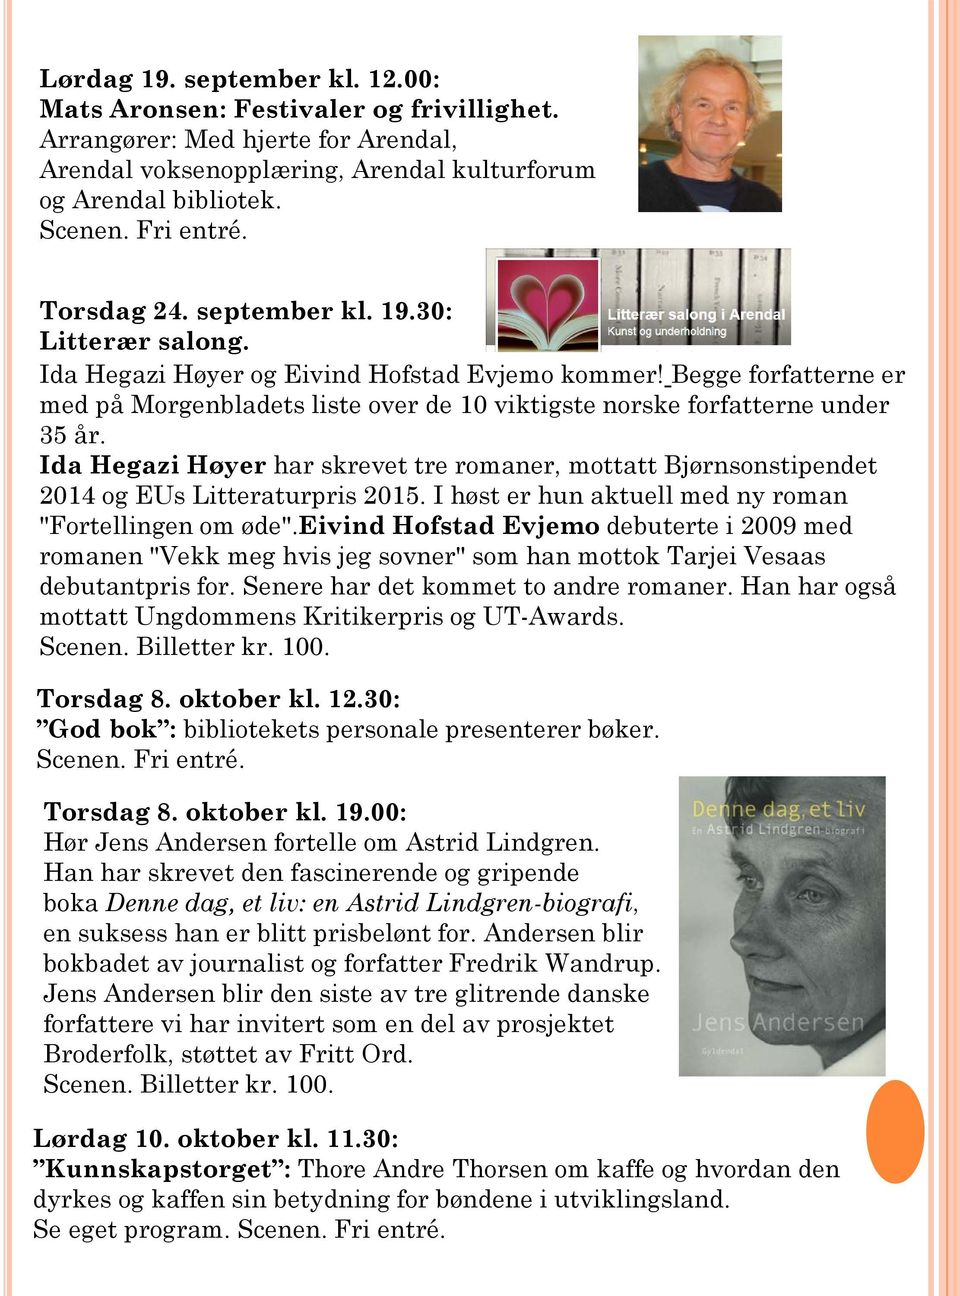 Ida Hegazi Høyer har skrevet tre romaner, mottatt Bjørnsonstipendet 2014 og EUs Litteraturpris 2015. I høst er hun aktuell med ny roman "Fortellingen om øde".